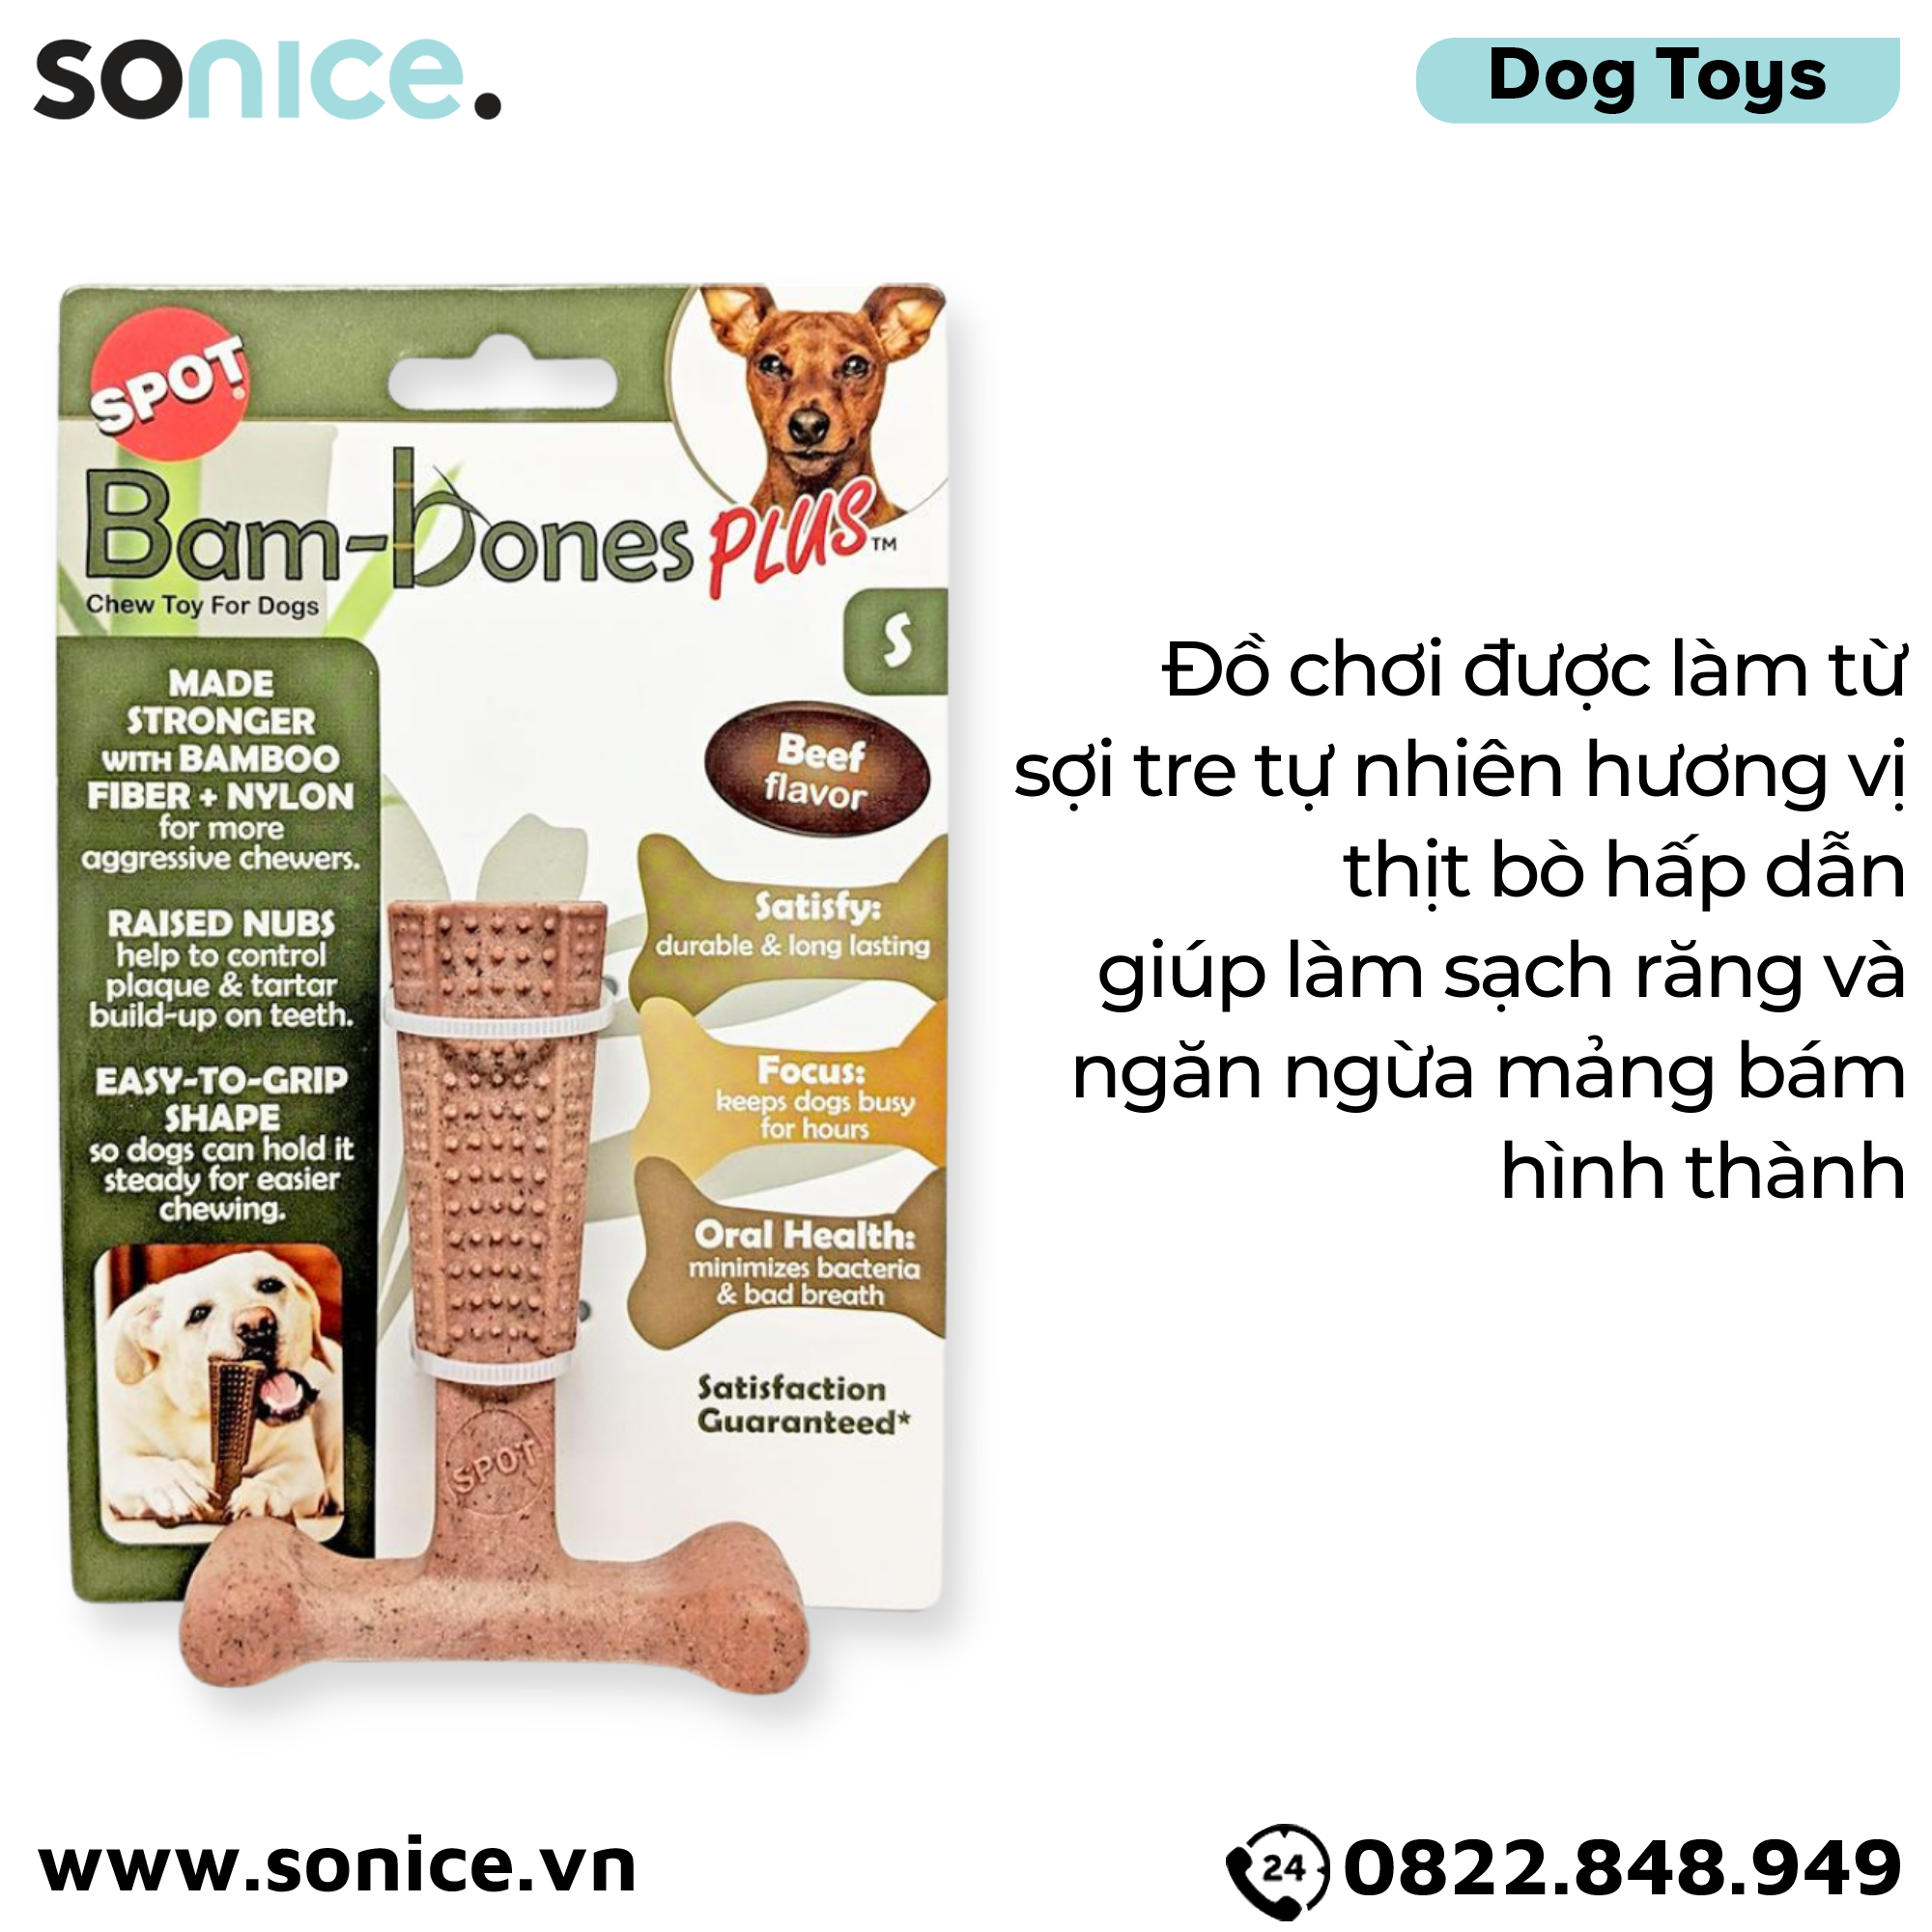  Đồ chơi Spot Bam-Bones Plus Beef Flavor Dog Chew Toy Small Size - Làm từ sợi tre tự nhiên, vị thịt bò SONICE. 